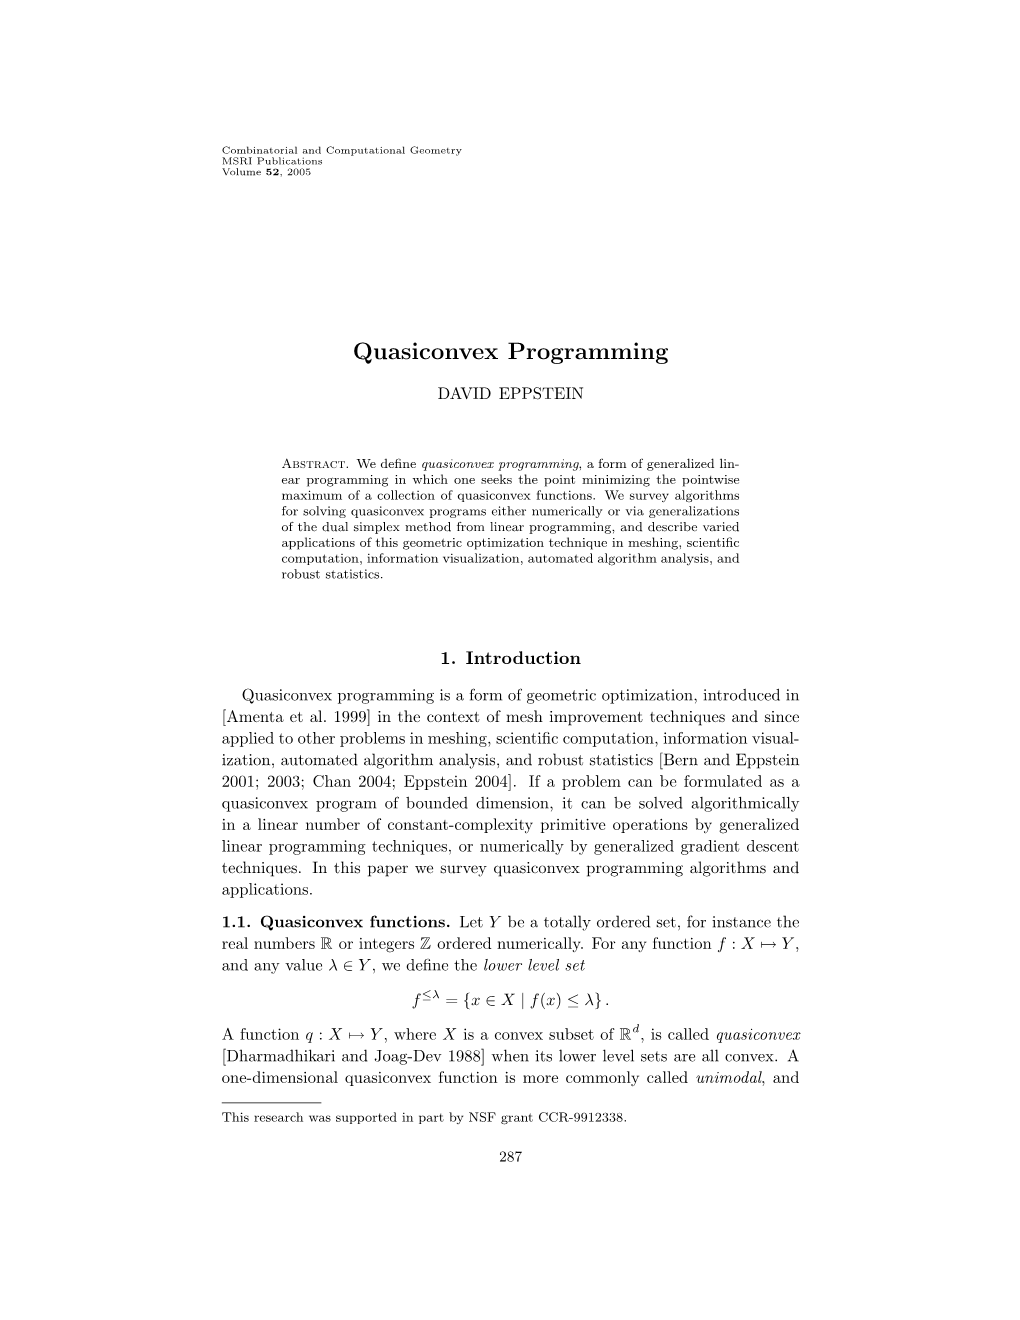 Quasiconvex Programming